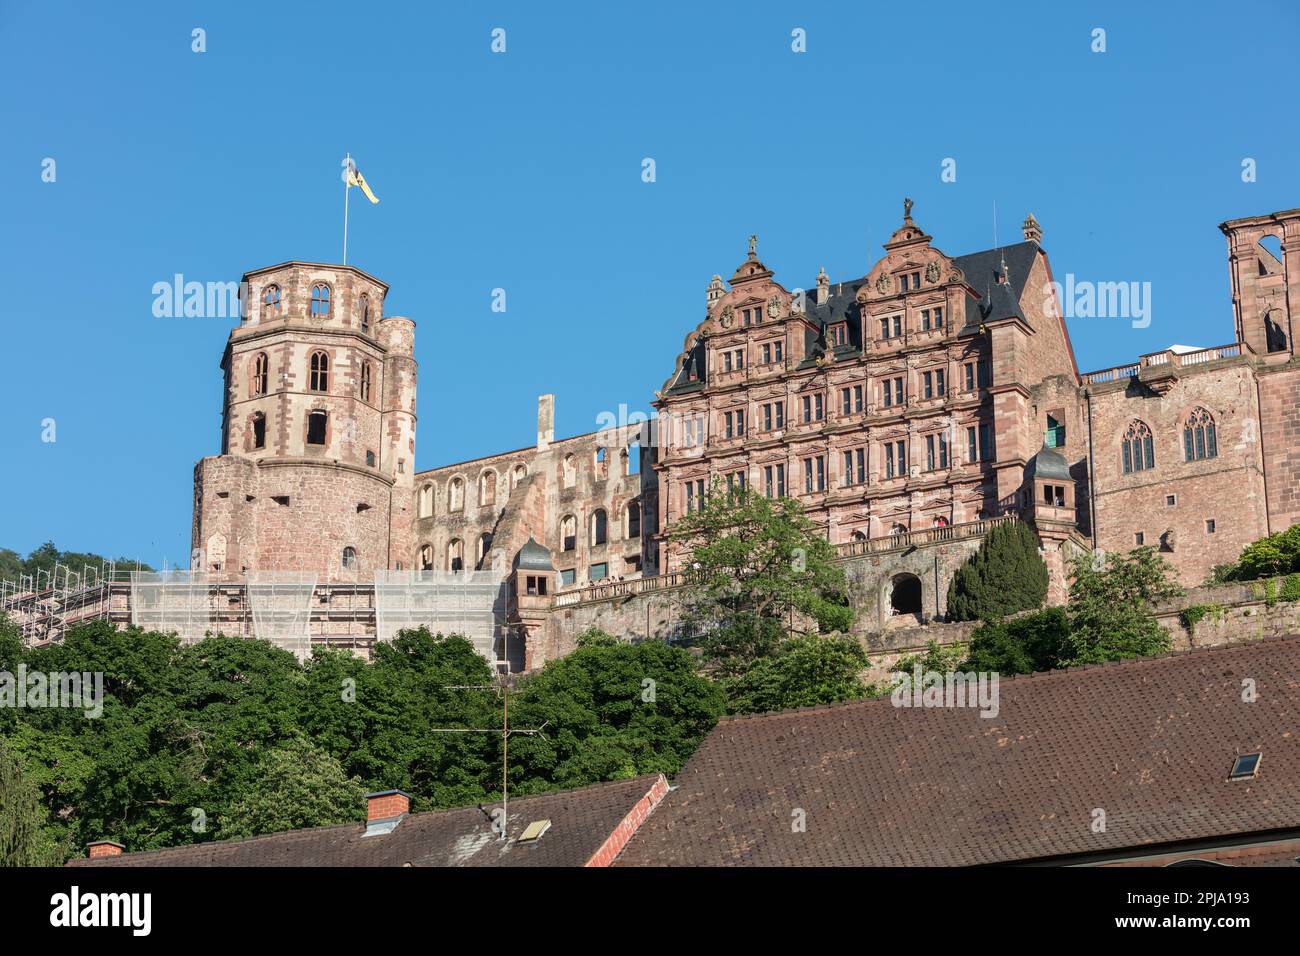 Il Castello di Heidelberg, sul colle di Konigstuhl, un edificio rinascimentale gotico del XIII secolo nella valle del Neckar, si affaccia sulla città Vecchia e sul fiume Neckar. Heidelberg Foto Stock